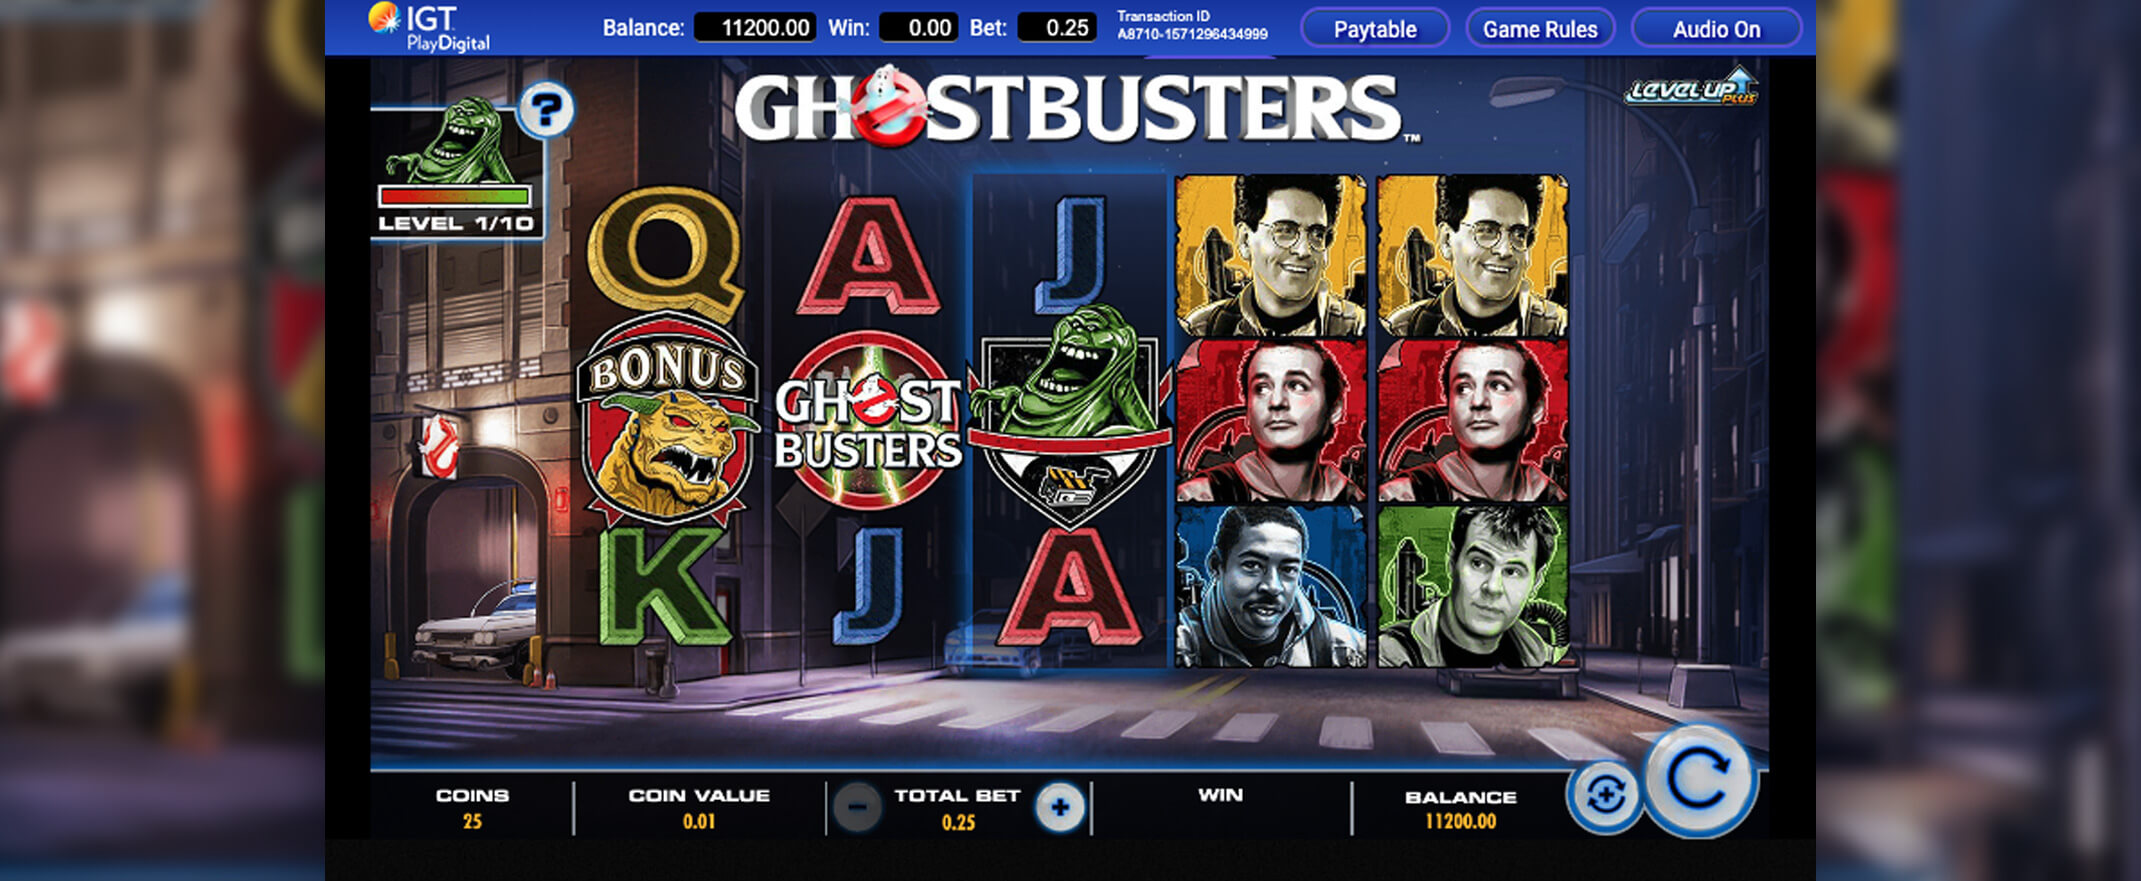 Ghostbusters Spielautomat spielen